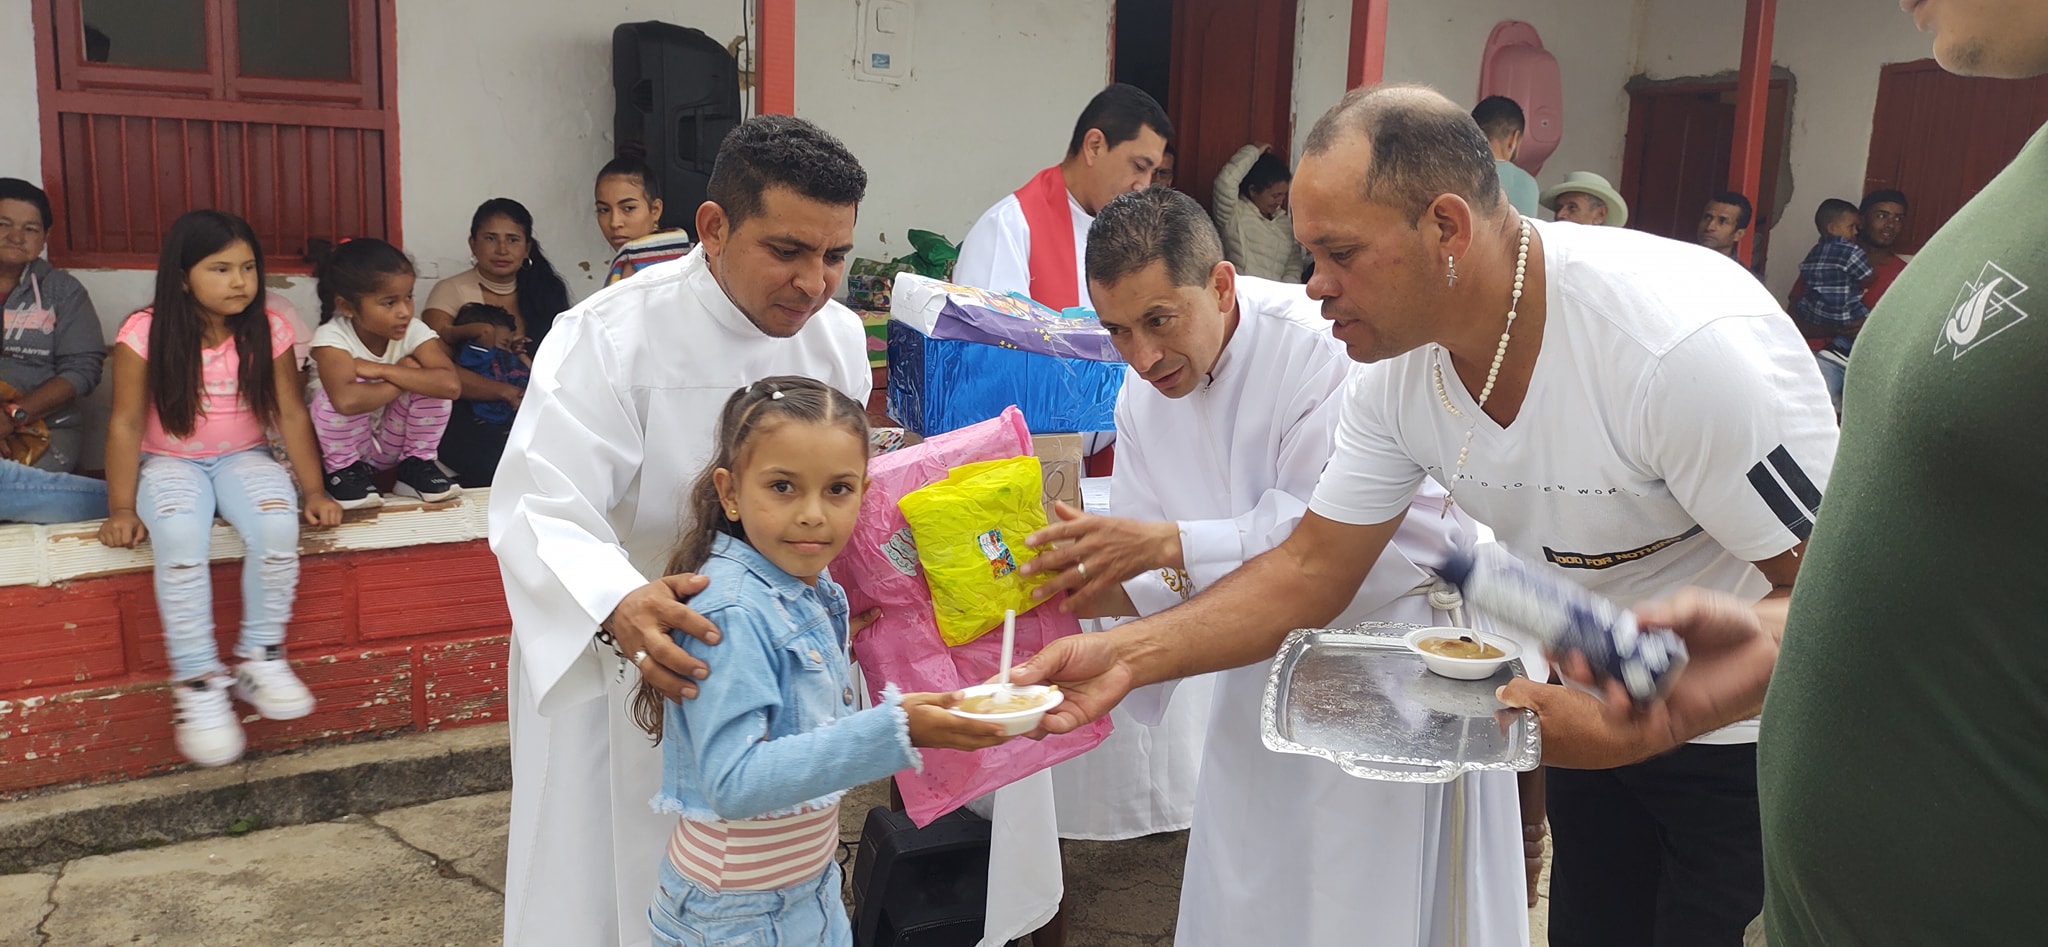 Repartiendo regalos en la Misión Mocorongo Antioquia